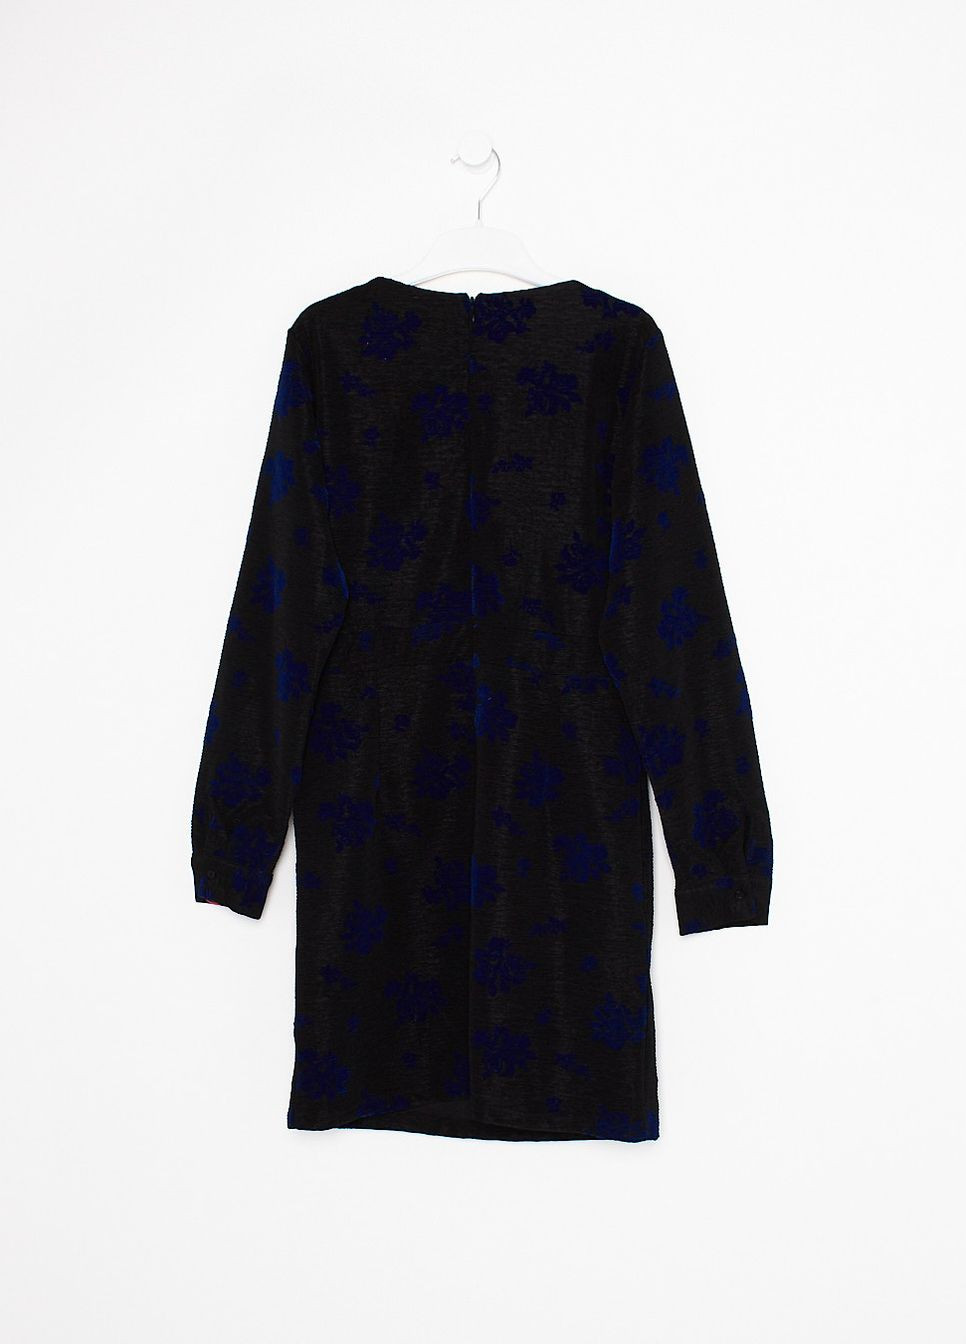 Черное платье демисезон,черний в синие узори, Object